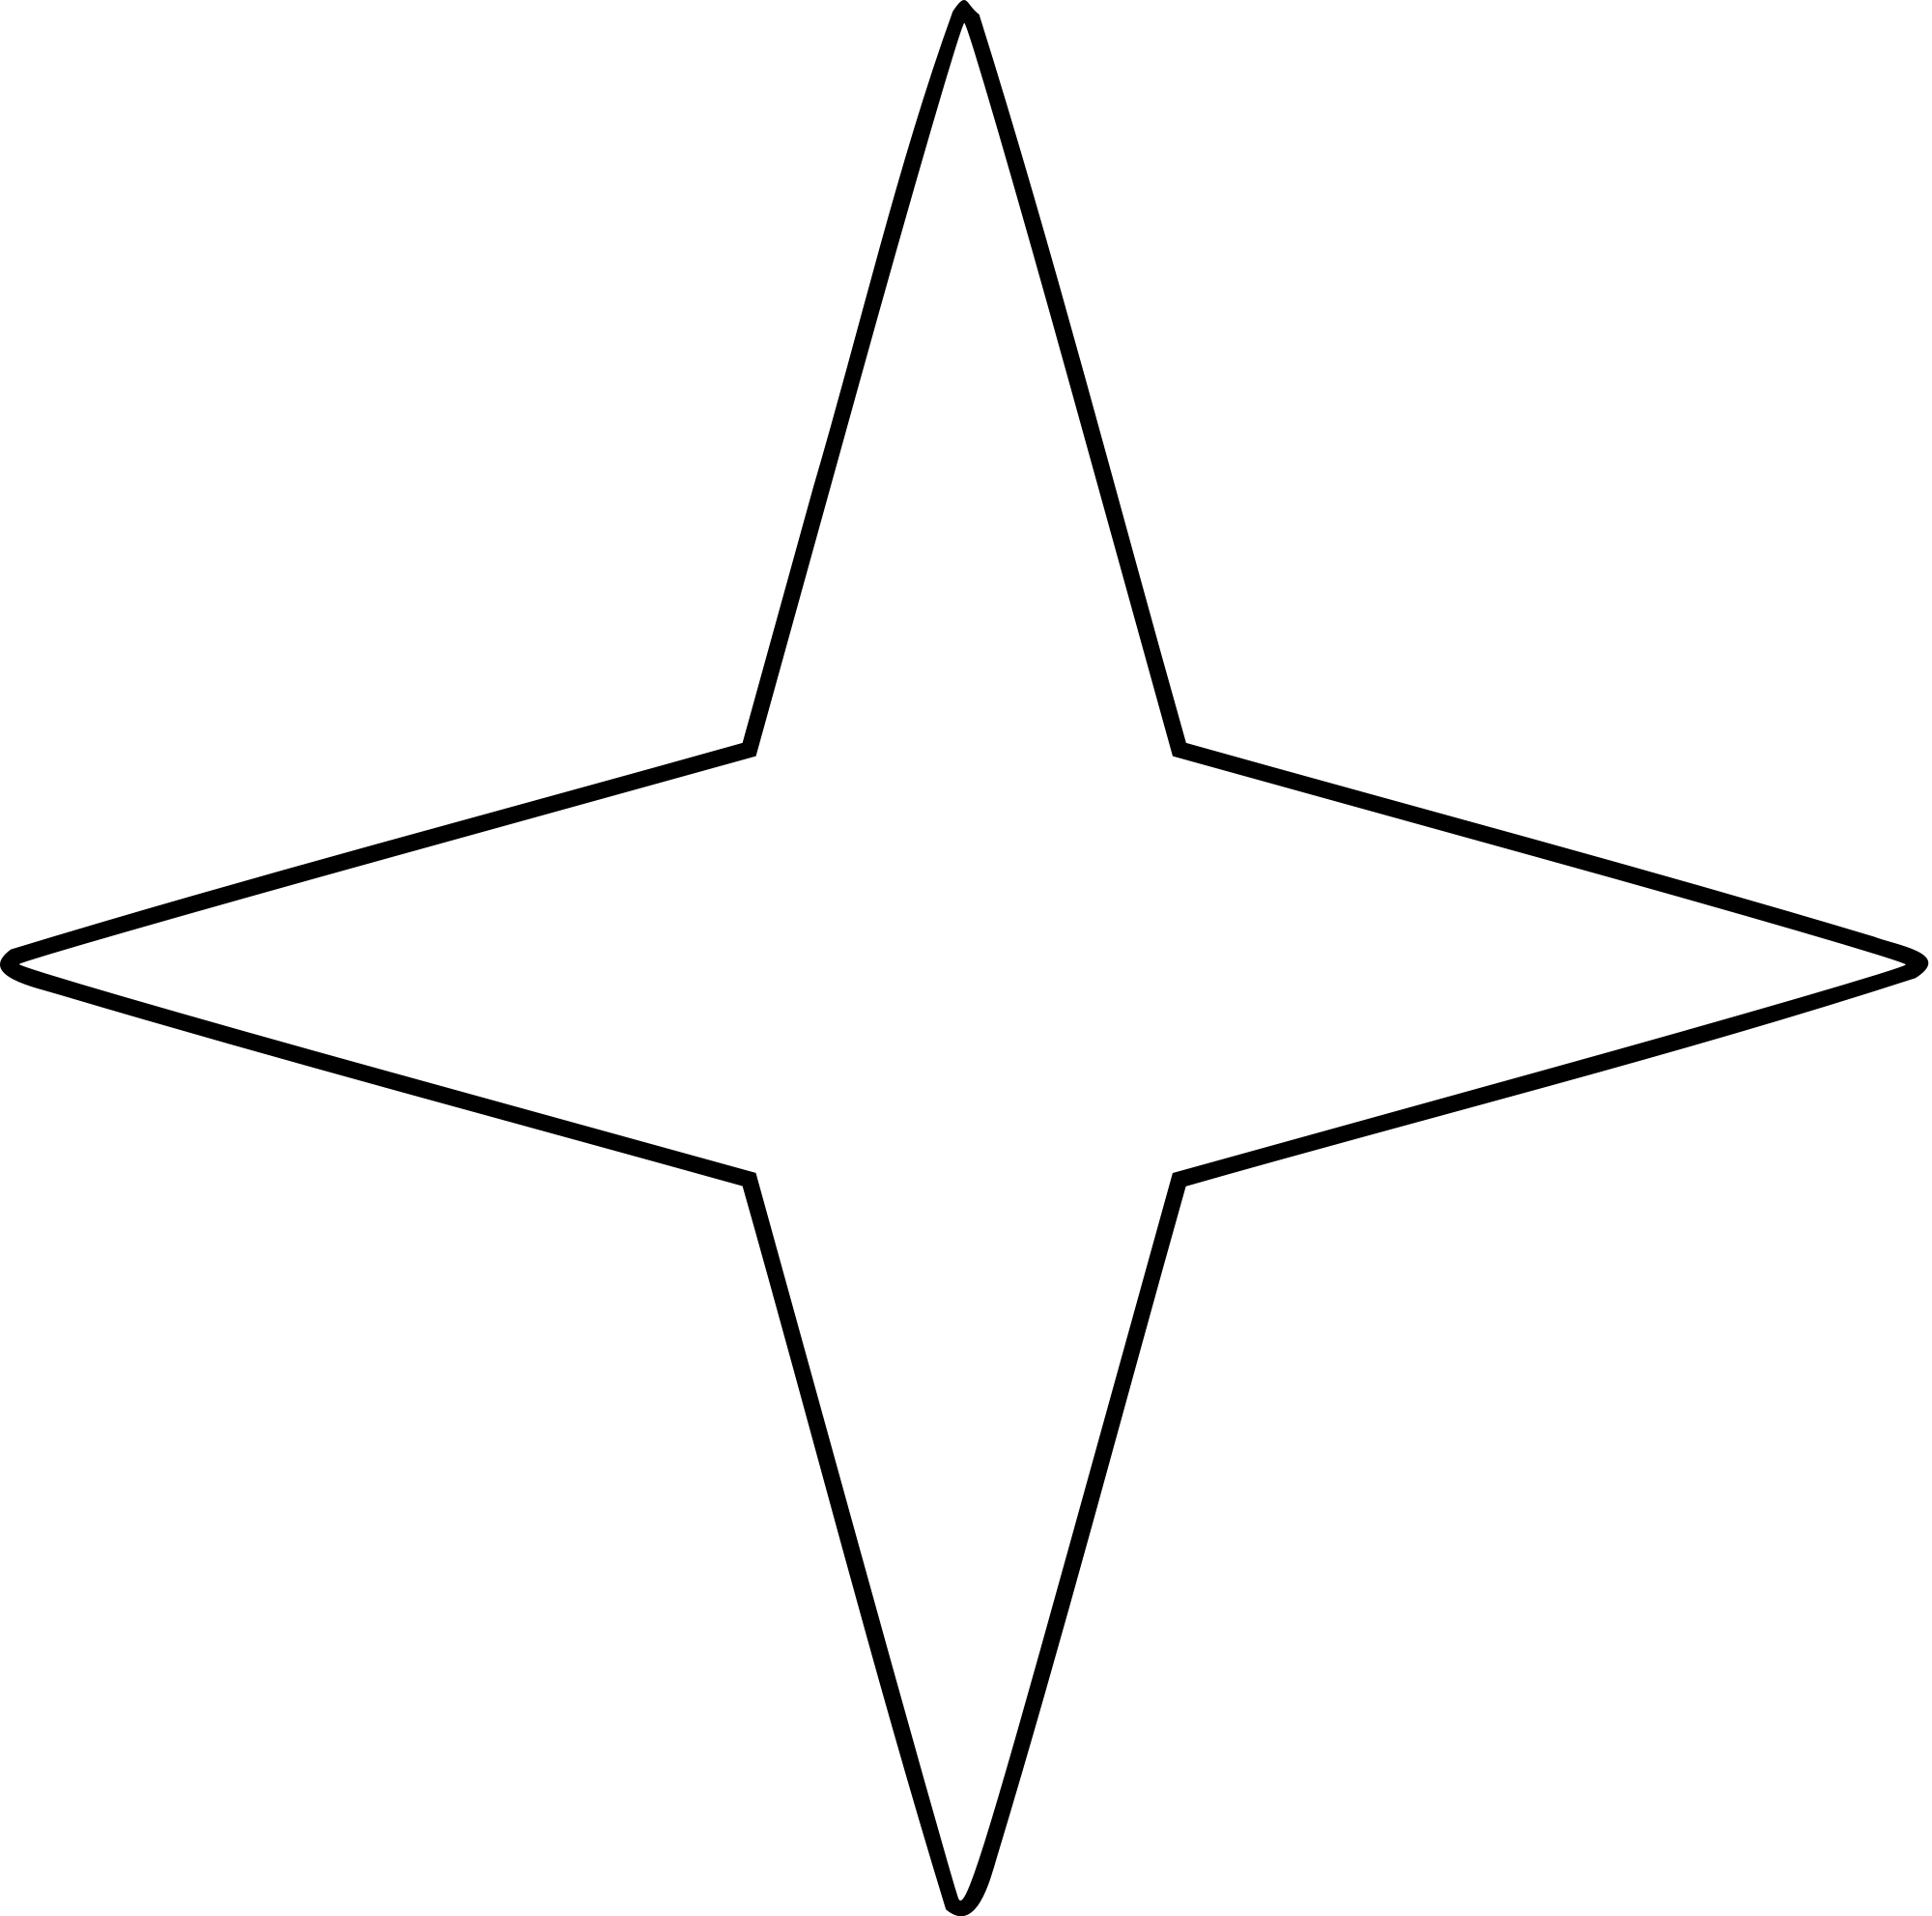 Четырехконечная звезда svg. Звезда четырехконечная контур. Чеырехконечнаязвезда конур. Звезда контурный рисунок. Космические звезды шаблоны для вырезания